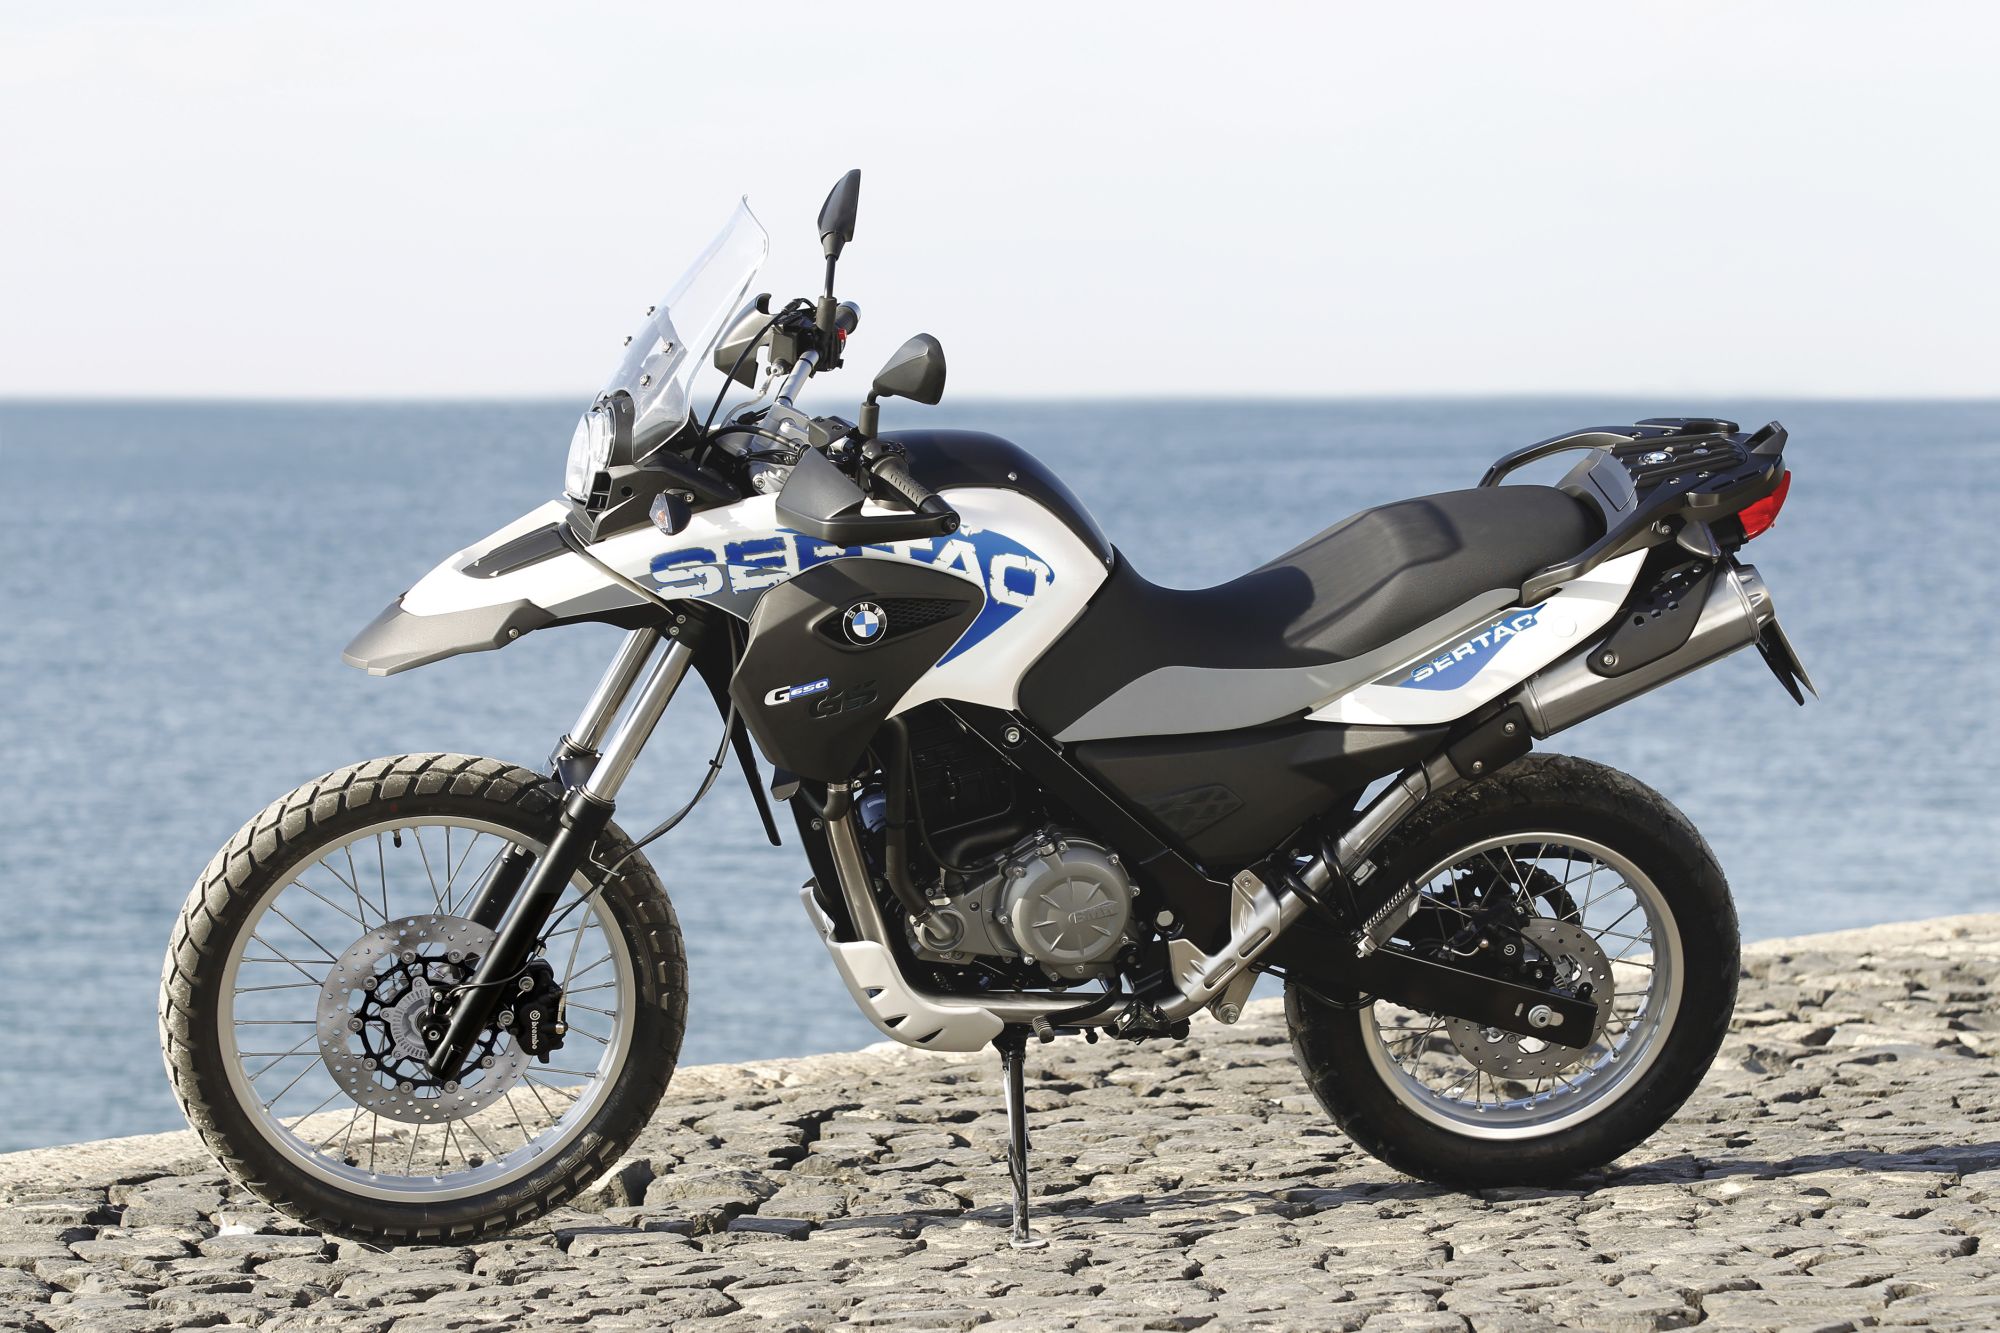 Gebrauchte BMW G 650 GS Sertao Motorräder kaufen